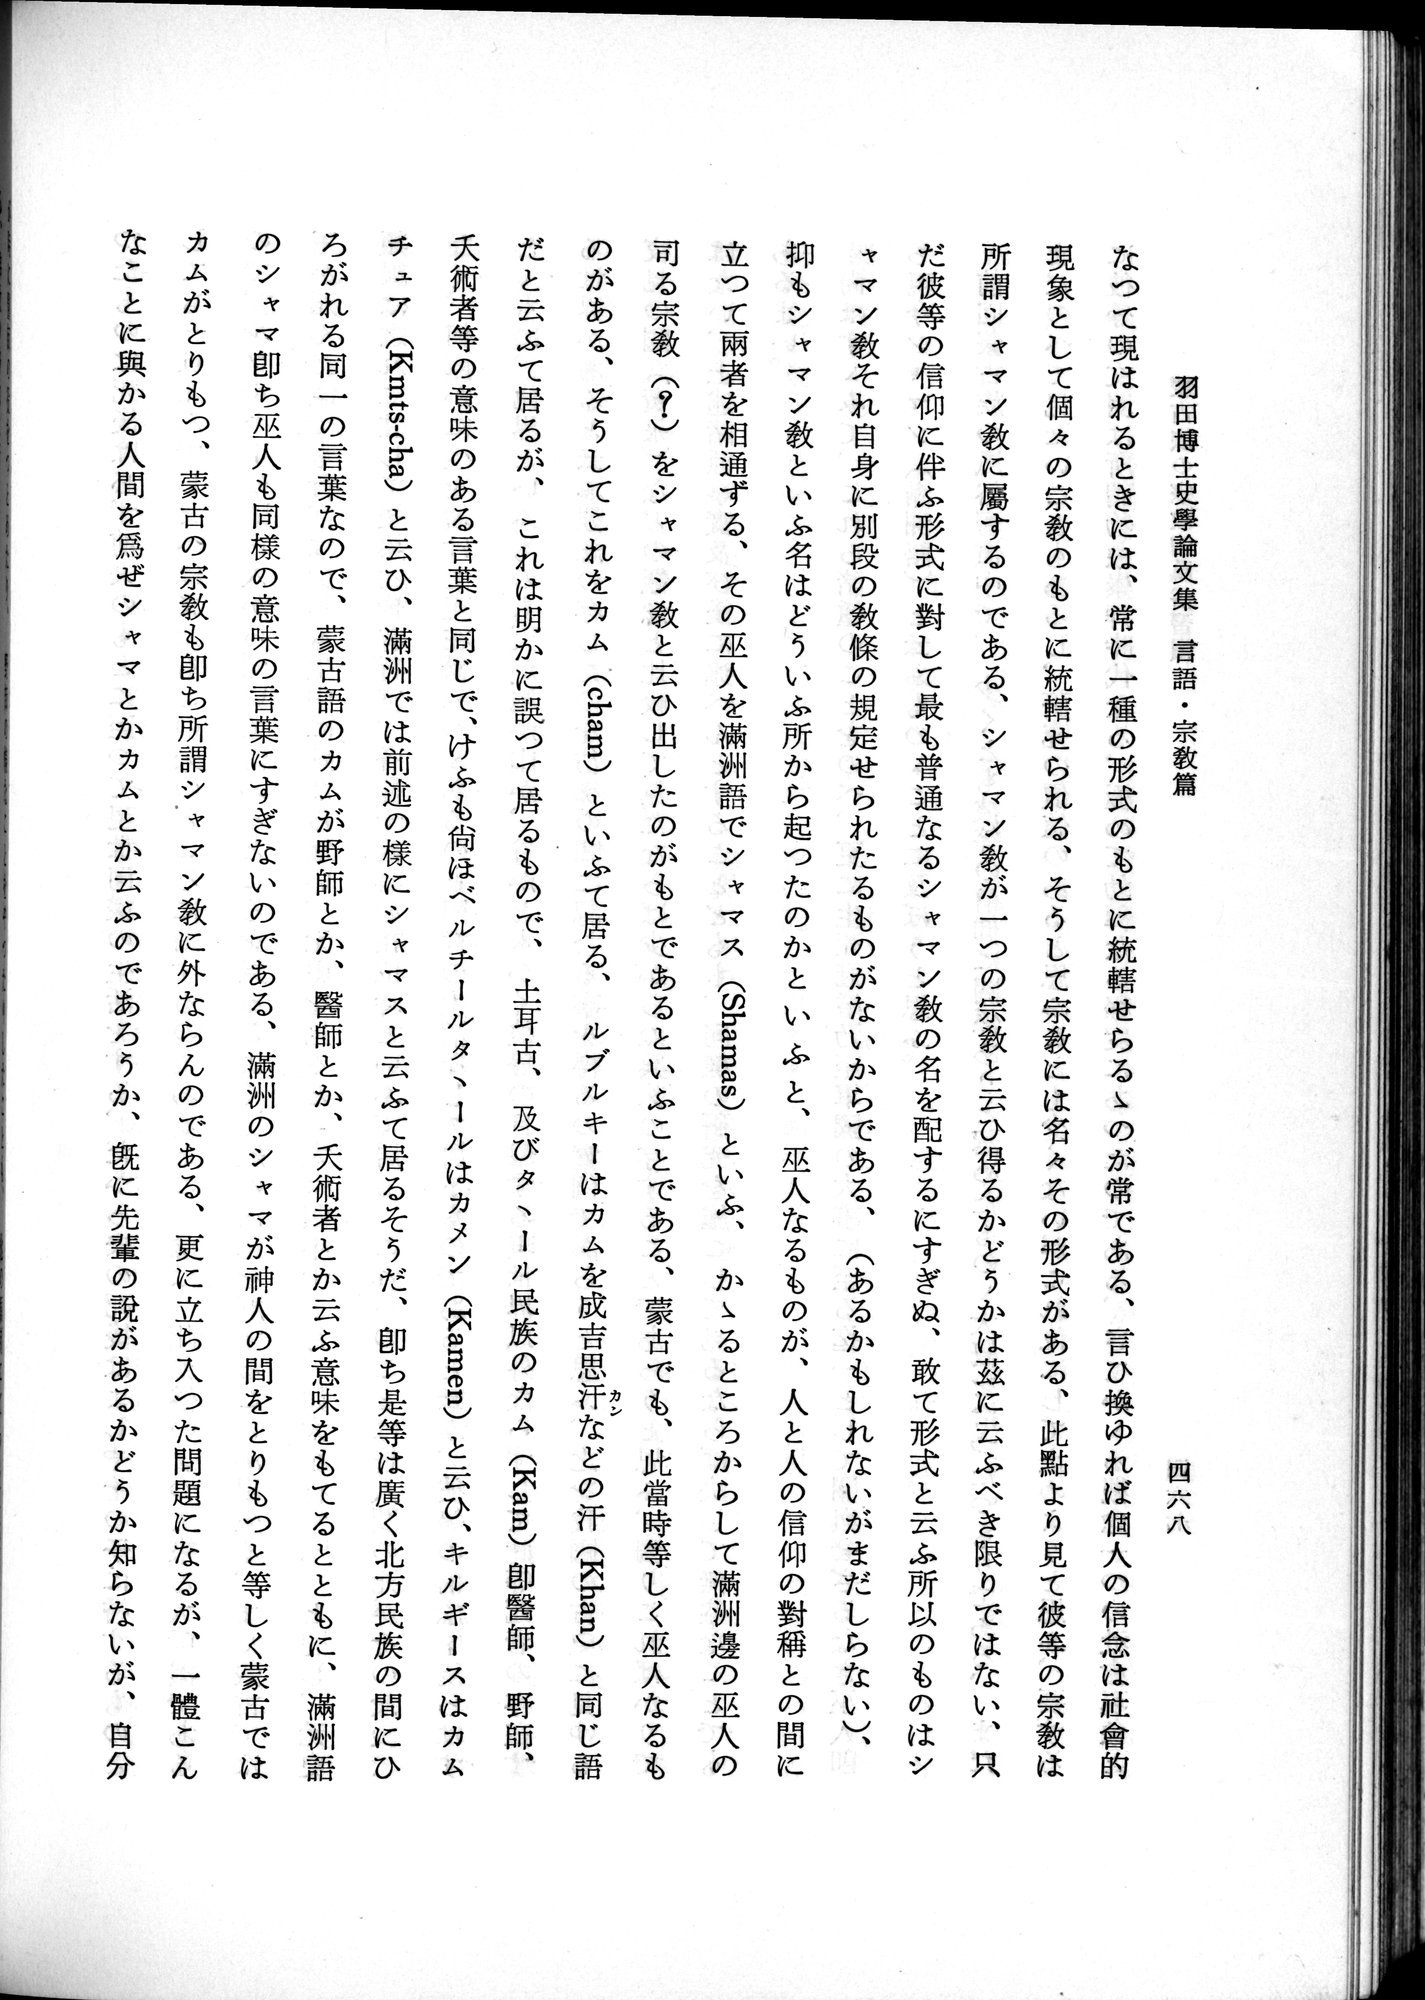 羽田博士史学論文集 : vol.2 / 530 ページ（白黒高解像度画像）